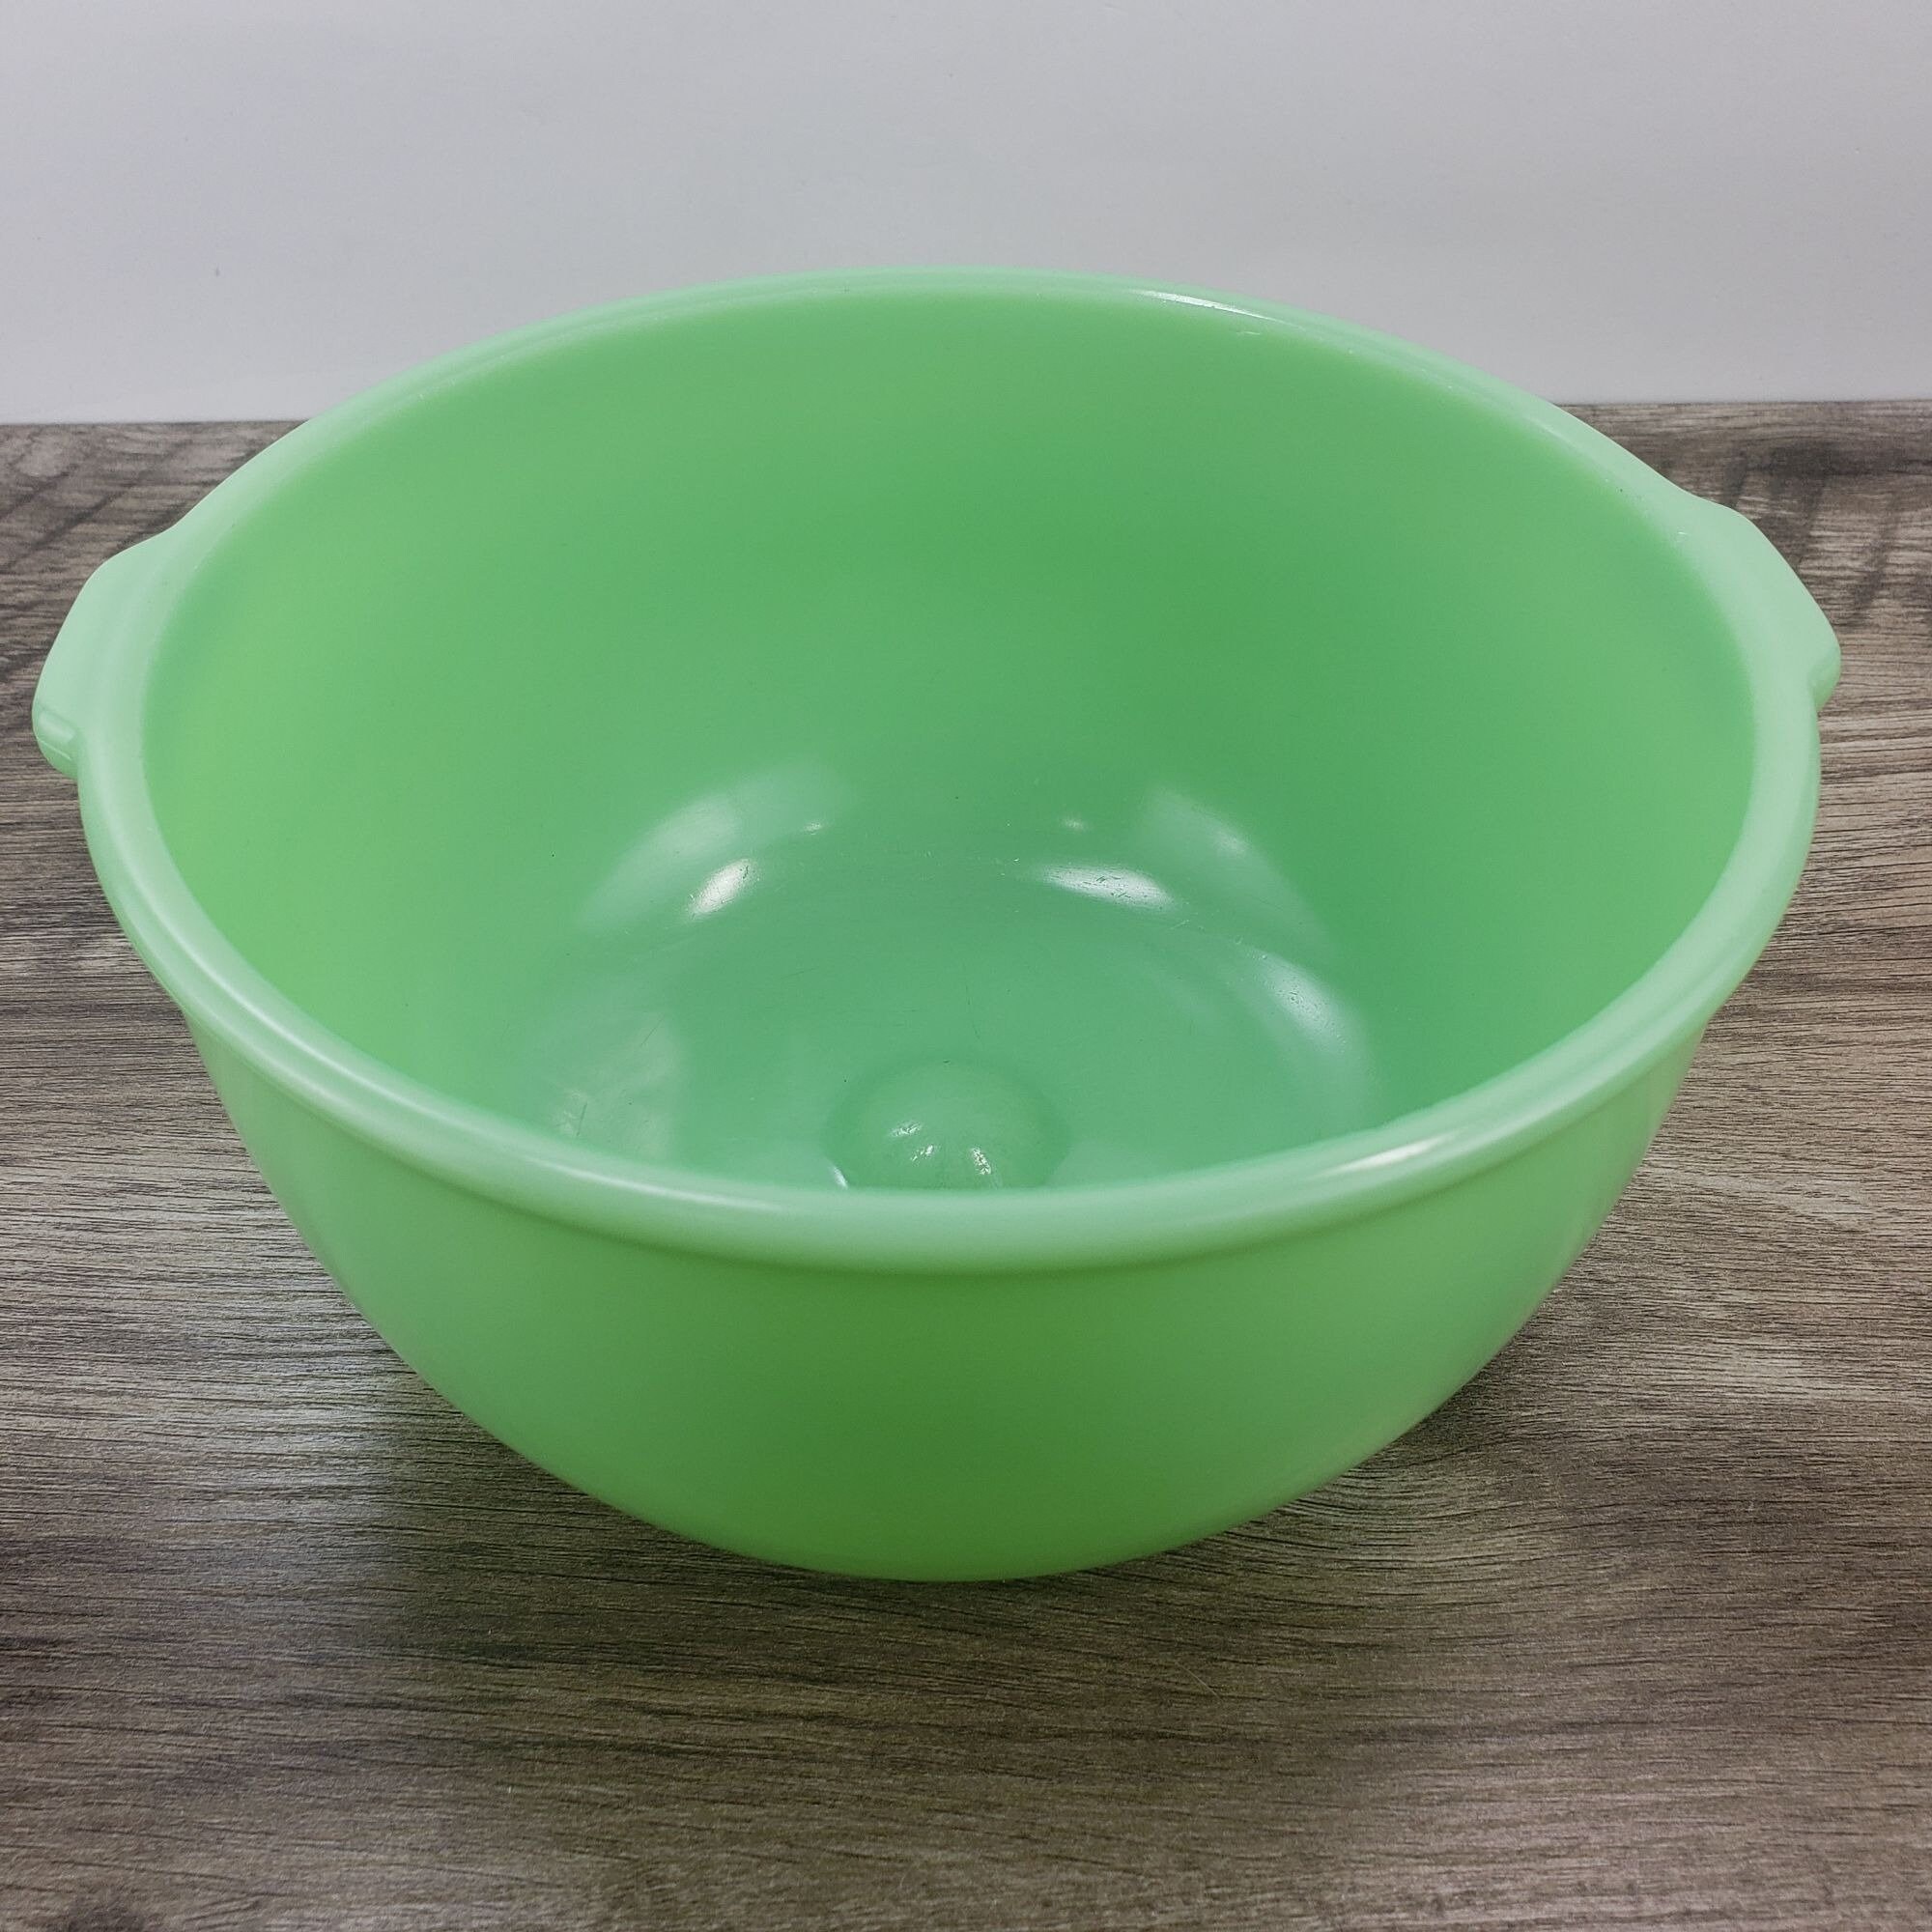 Vintage Uranium Depression Glass Batter Bowl with Pour Spout & Handle